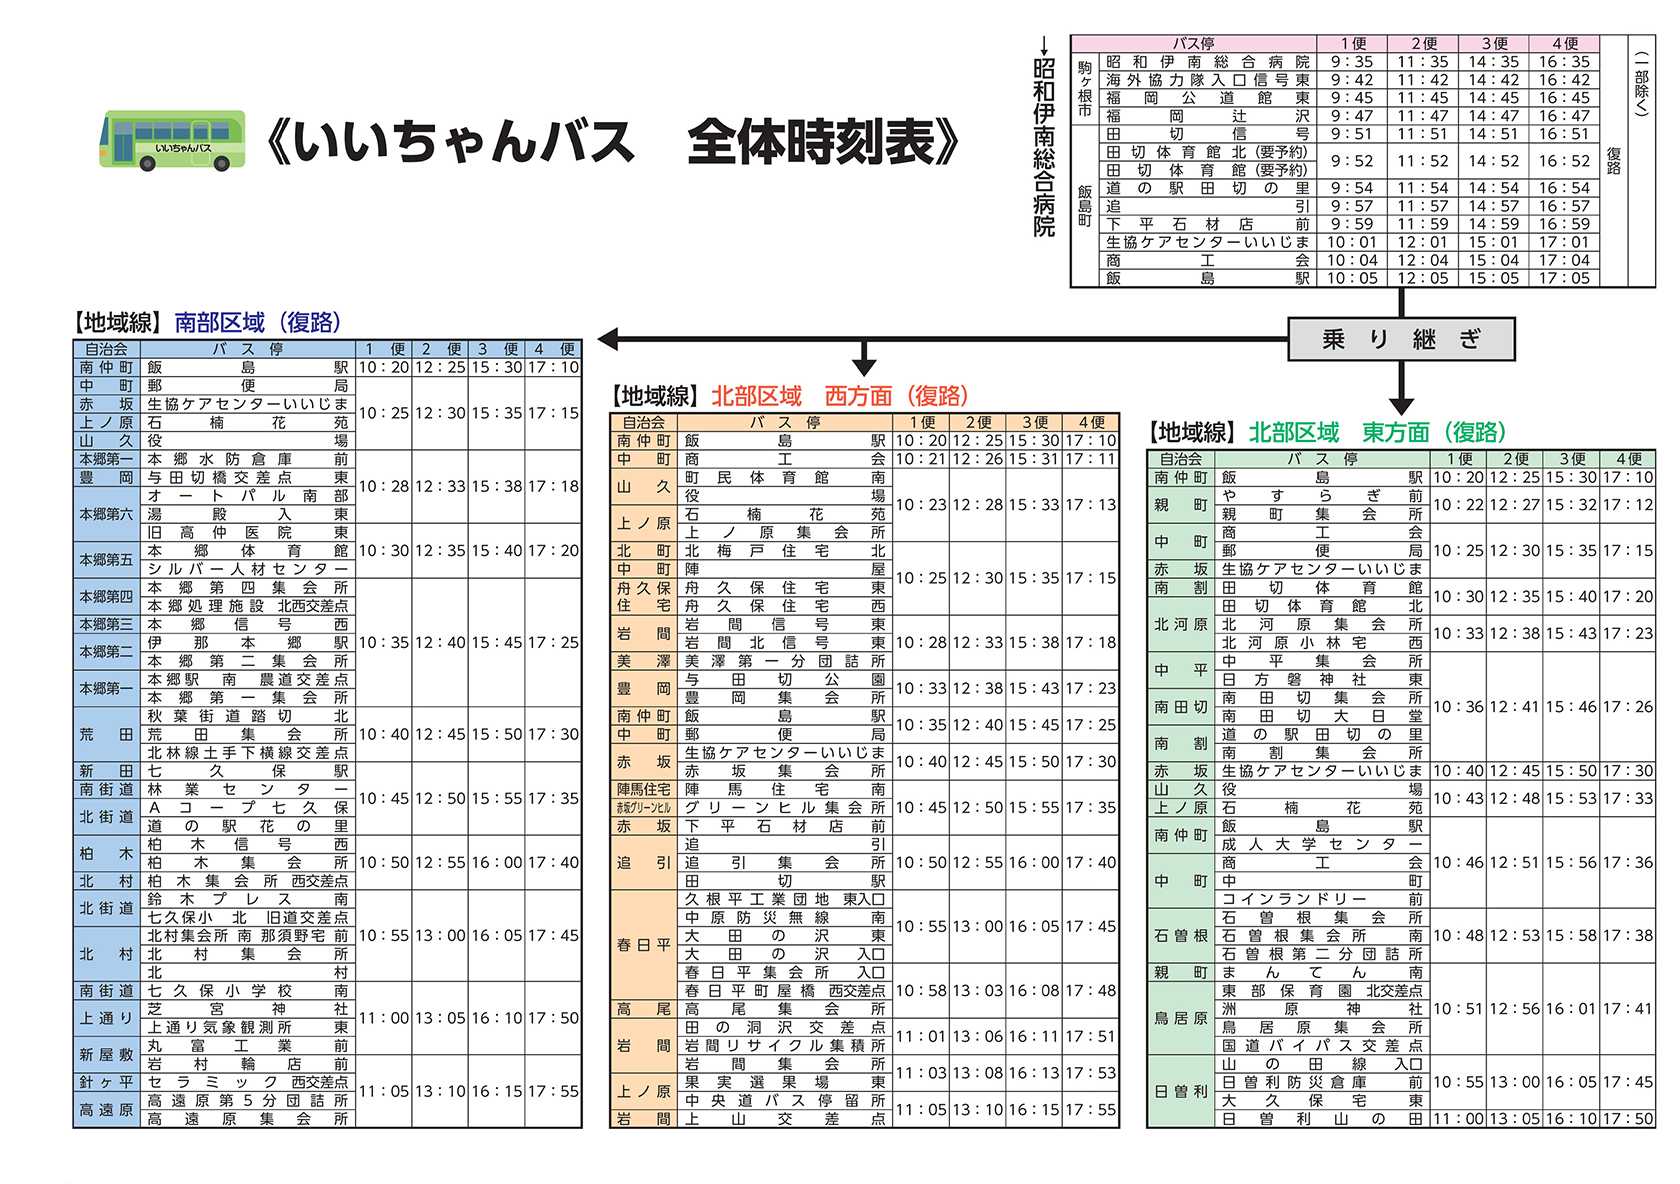 いいちゃんバス全路線各昭和伊南総合病院から地域行き乗り継ぎ時刻表